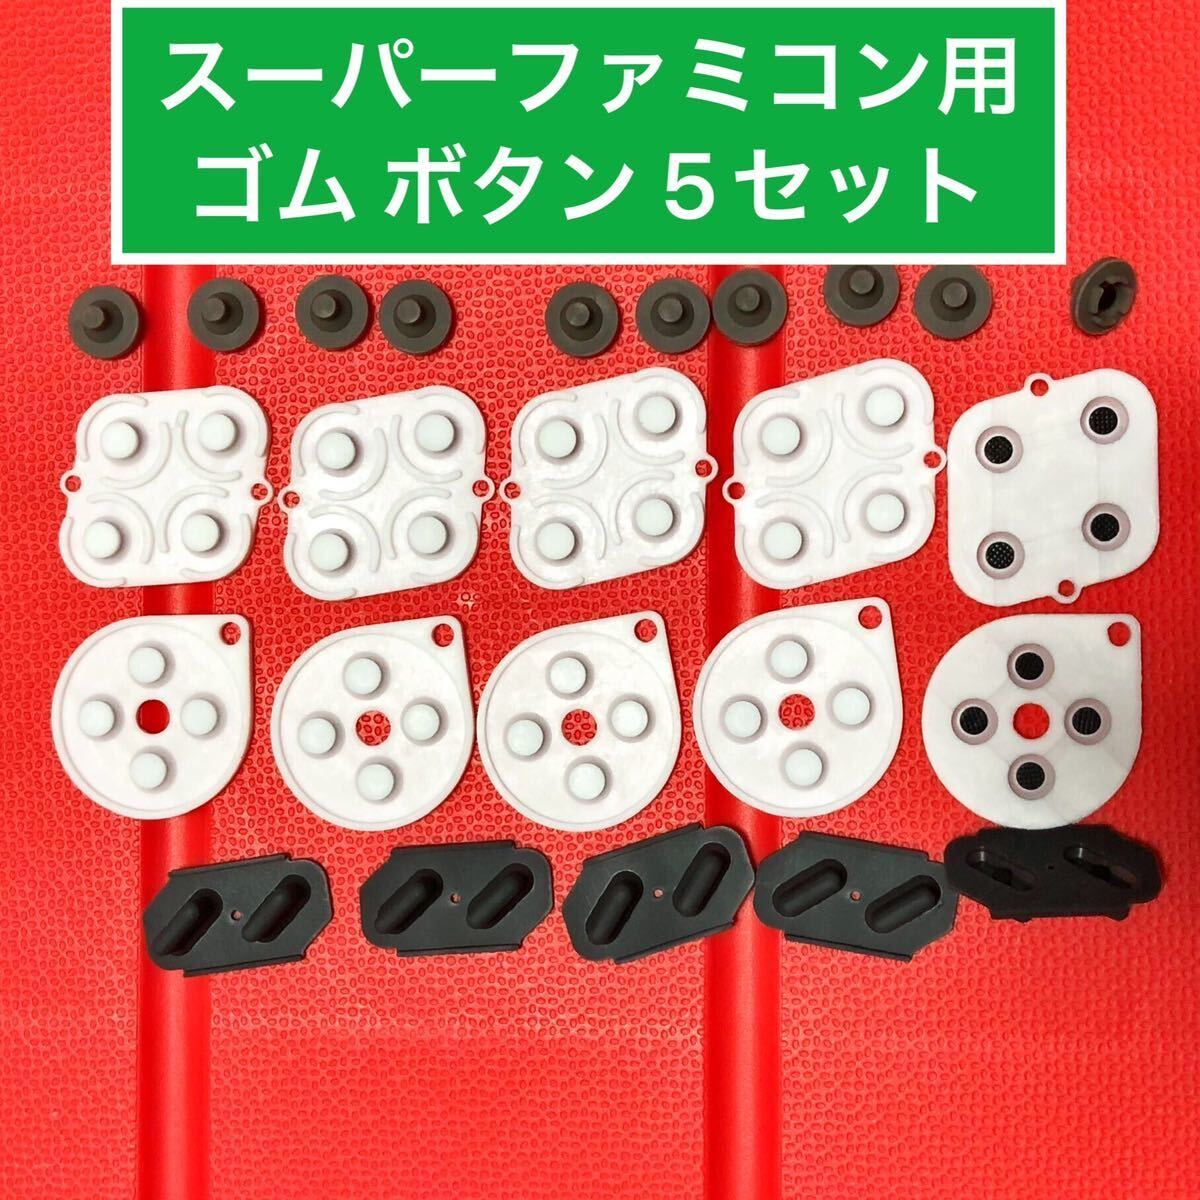 スーパーファミコンのコントローラー用 ボタンゴム  5セット 修理部品の画像1